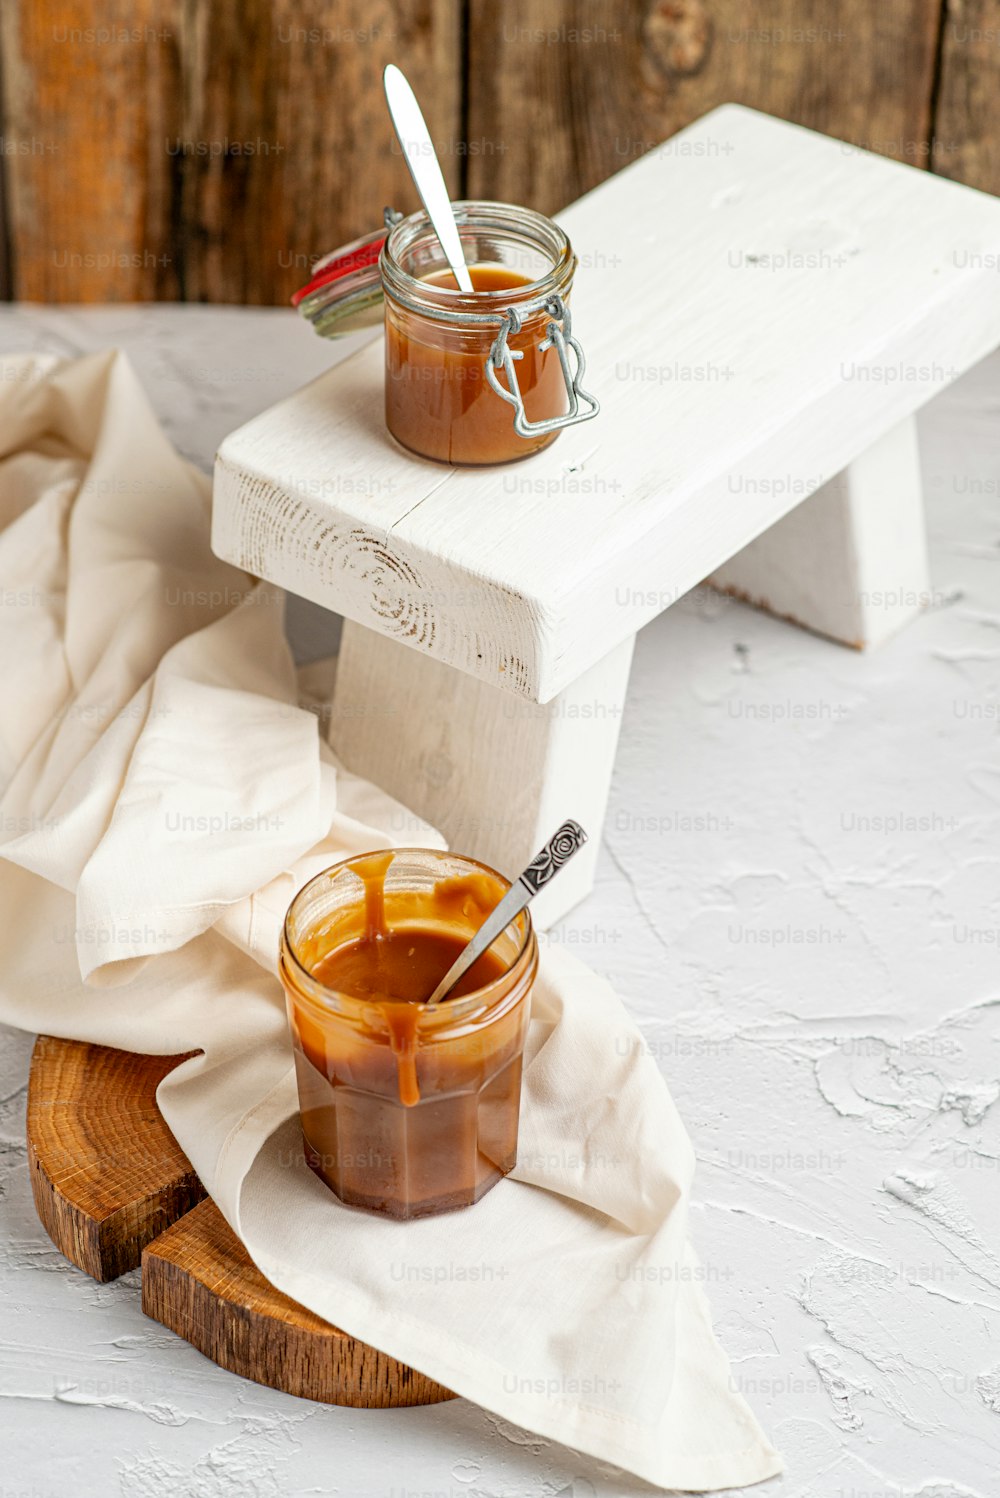 un pot de sauce au caramel posé sur une table en bois